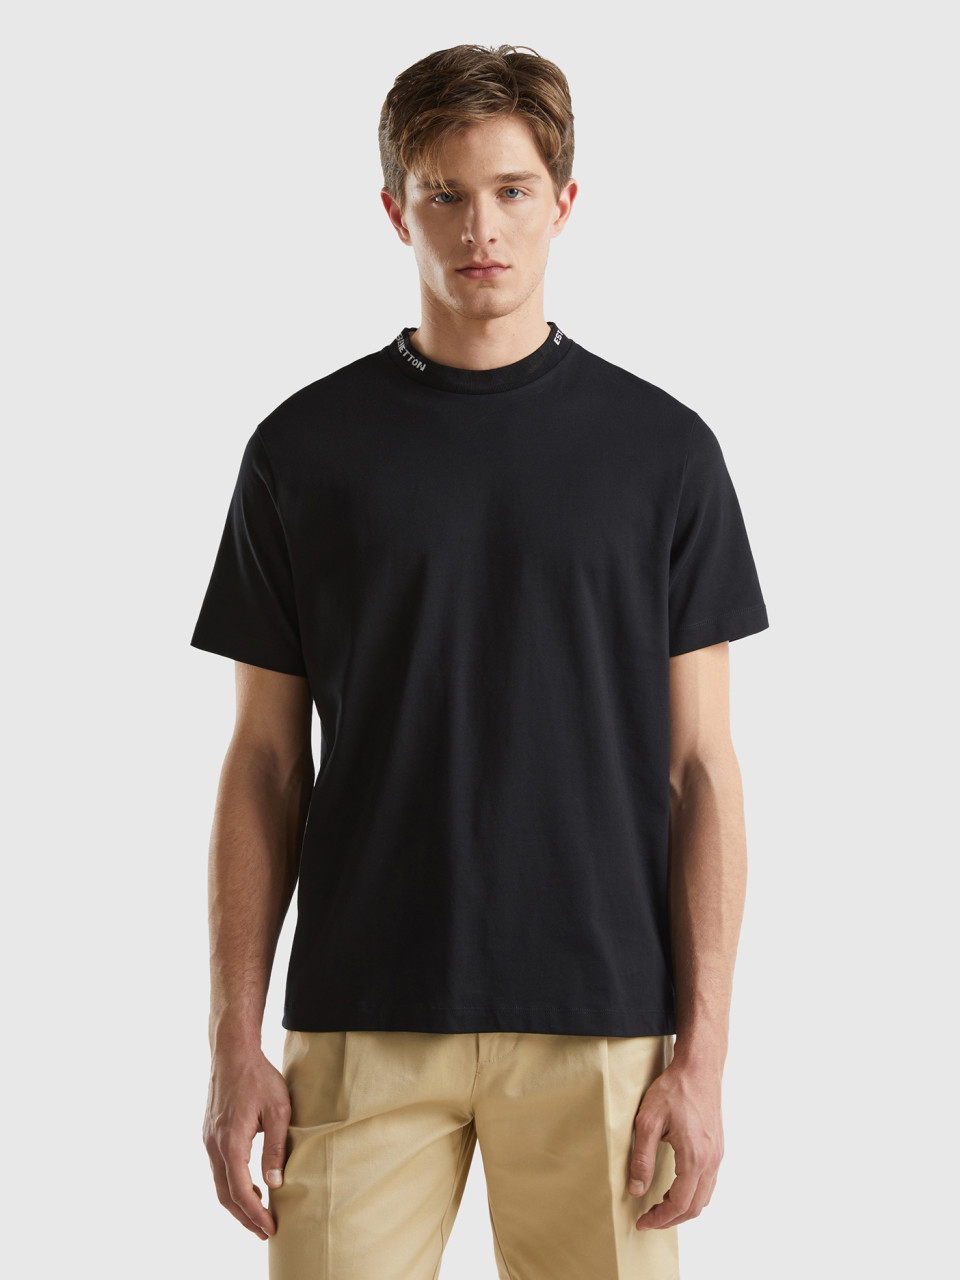 Benetton, Camiseta Negra Con Bordado En El Cuello, Negro, Hombre